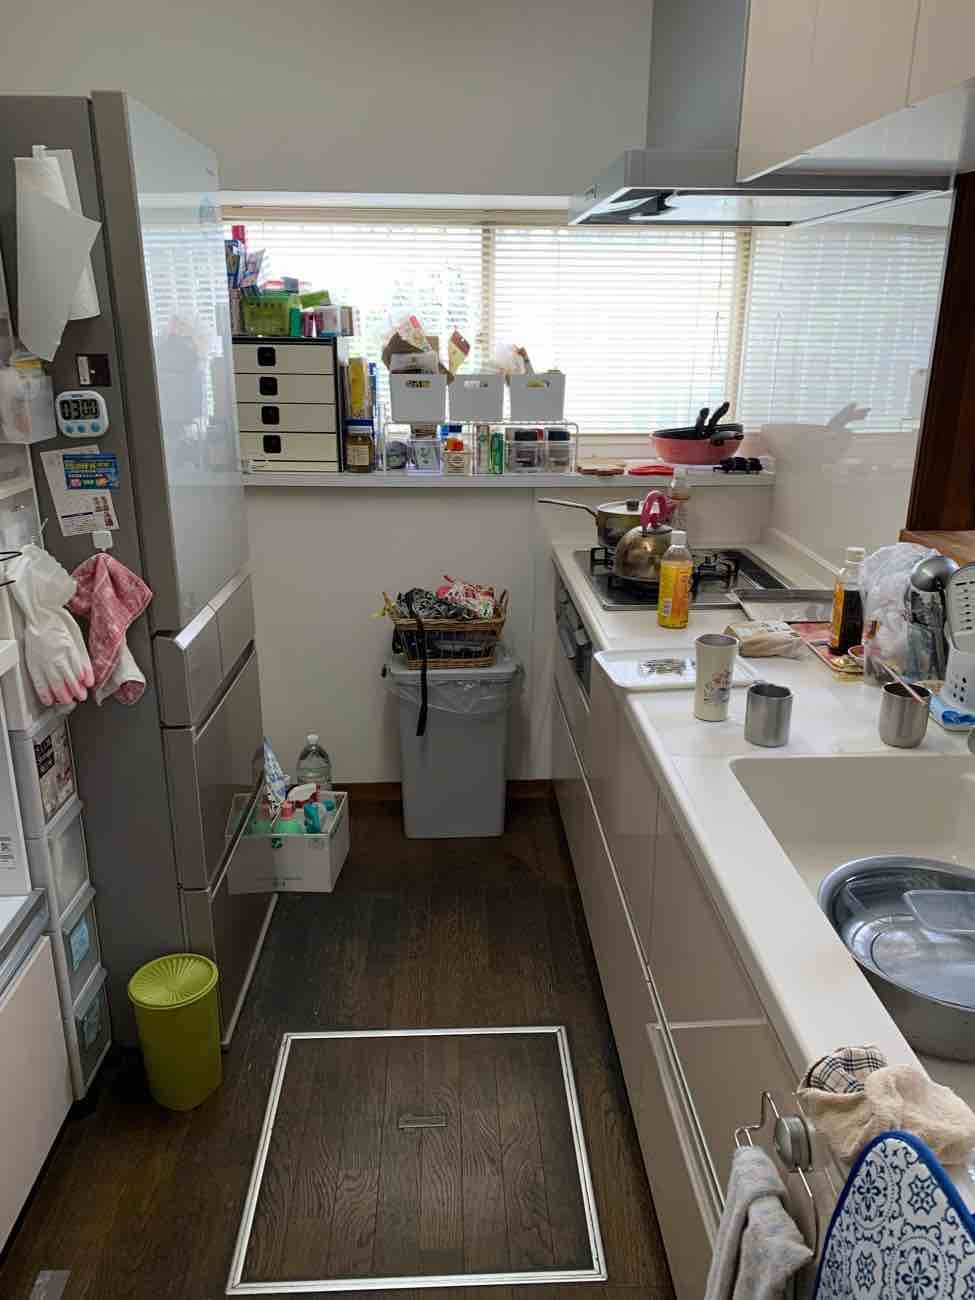 【埼玉県吉川市】K様邸キッチン交換工事が完了しました。TOTO ミッテI型2600 画像